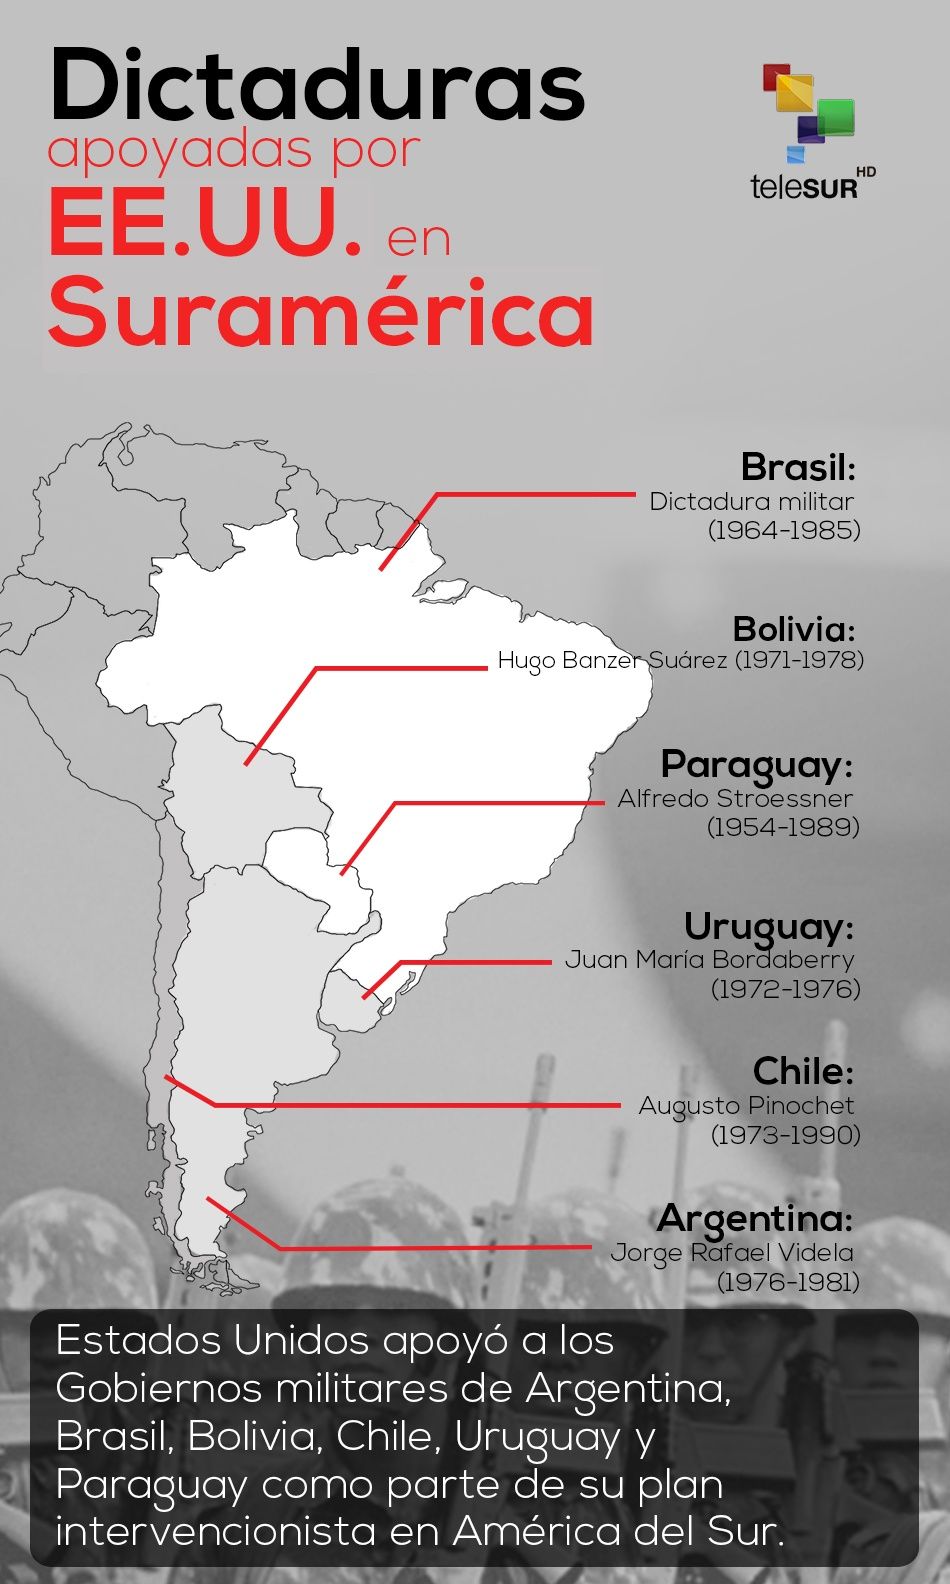 Dictaduras apoyadas por EE.UU. en Suramérica